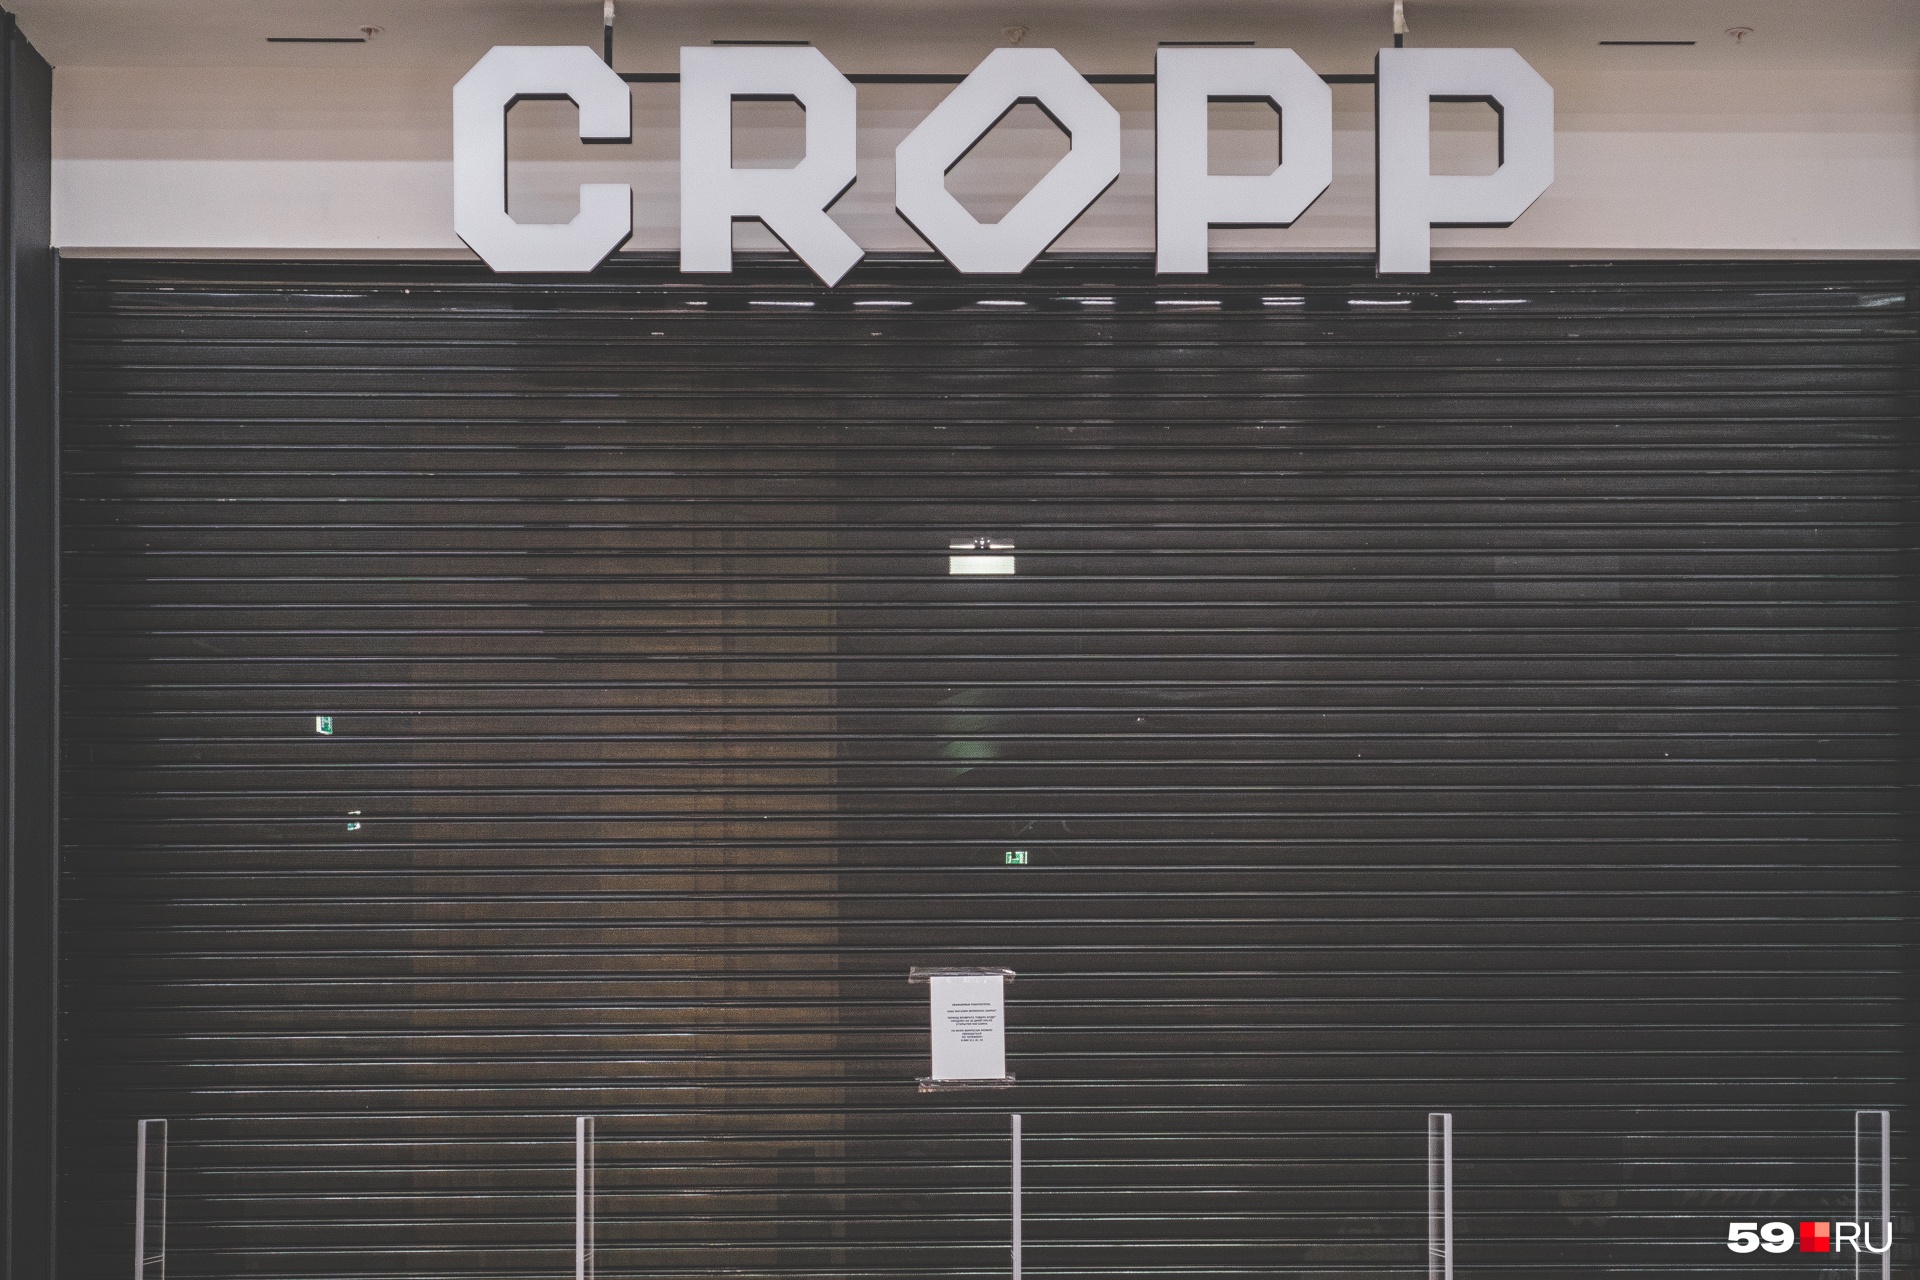 Еще один магазин одежды и аксессуаров — Cropp